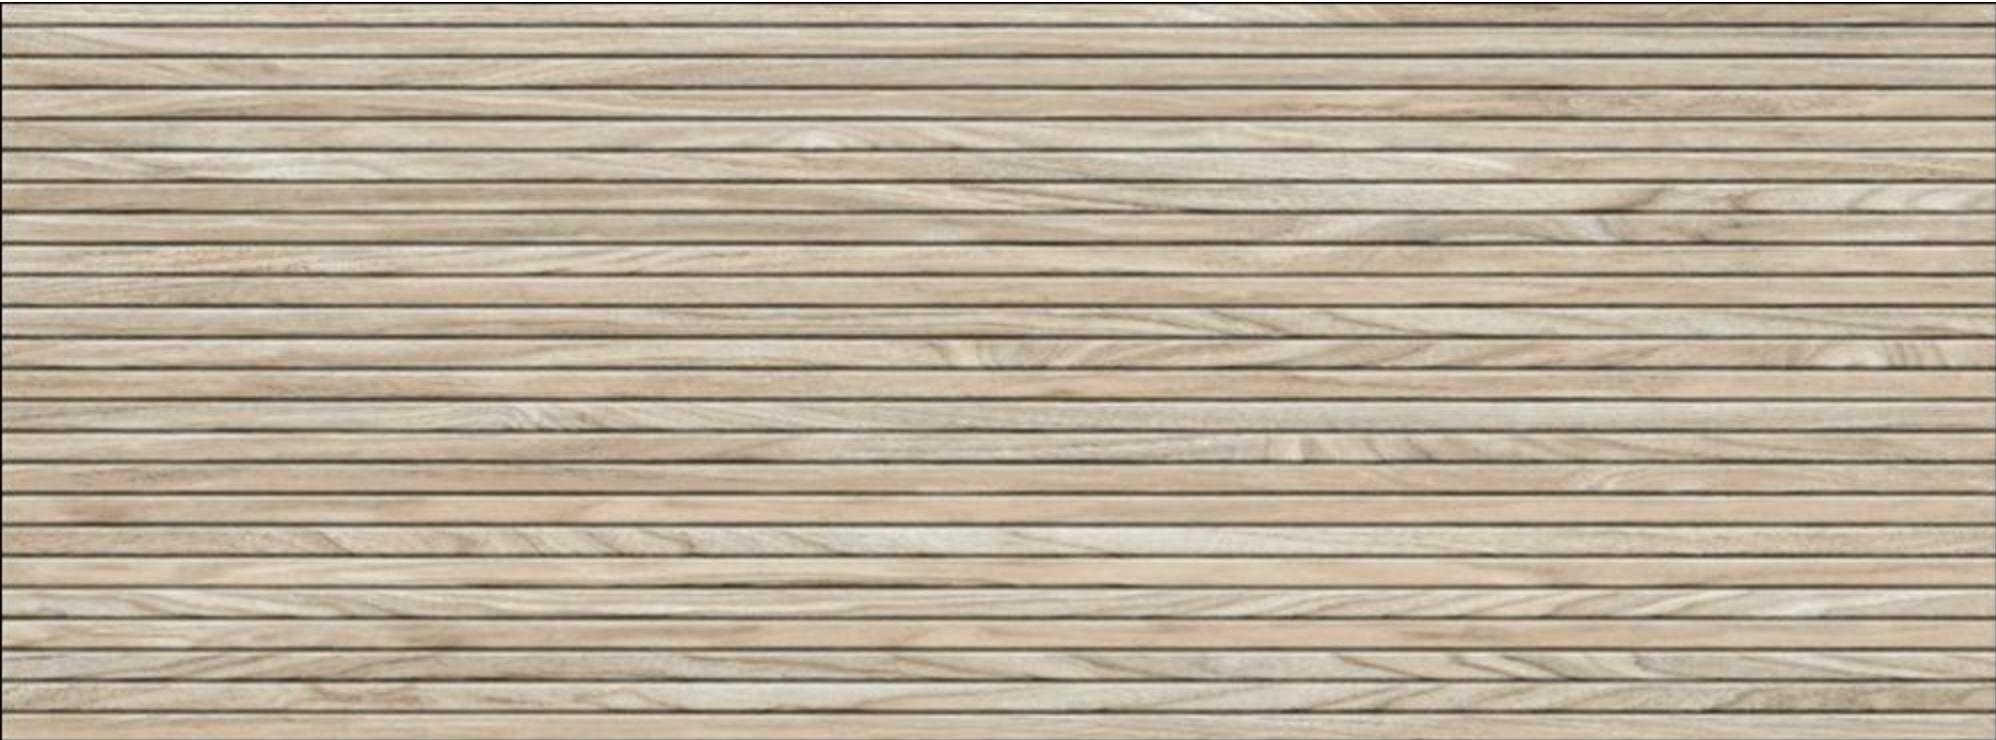 Repose 18x48 Cipres Wood Panel Look Ceramic Tile - SAMPLE